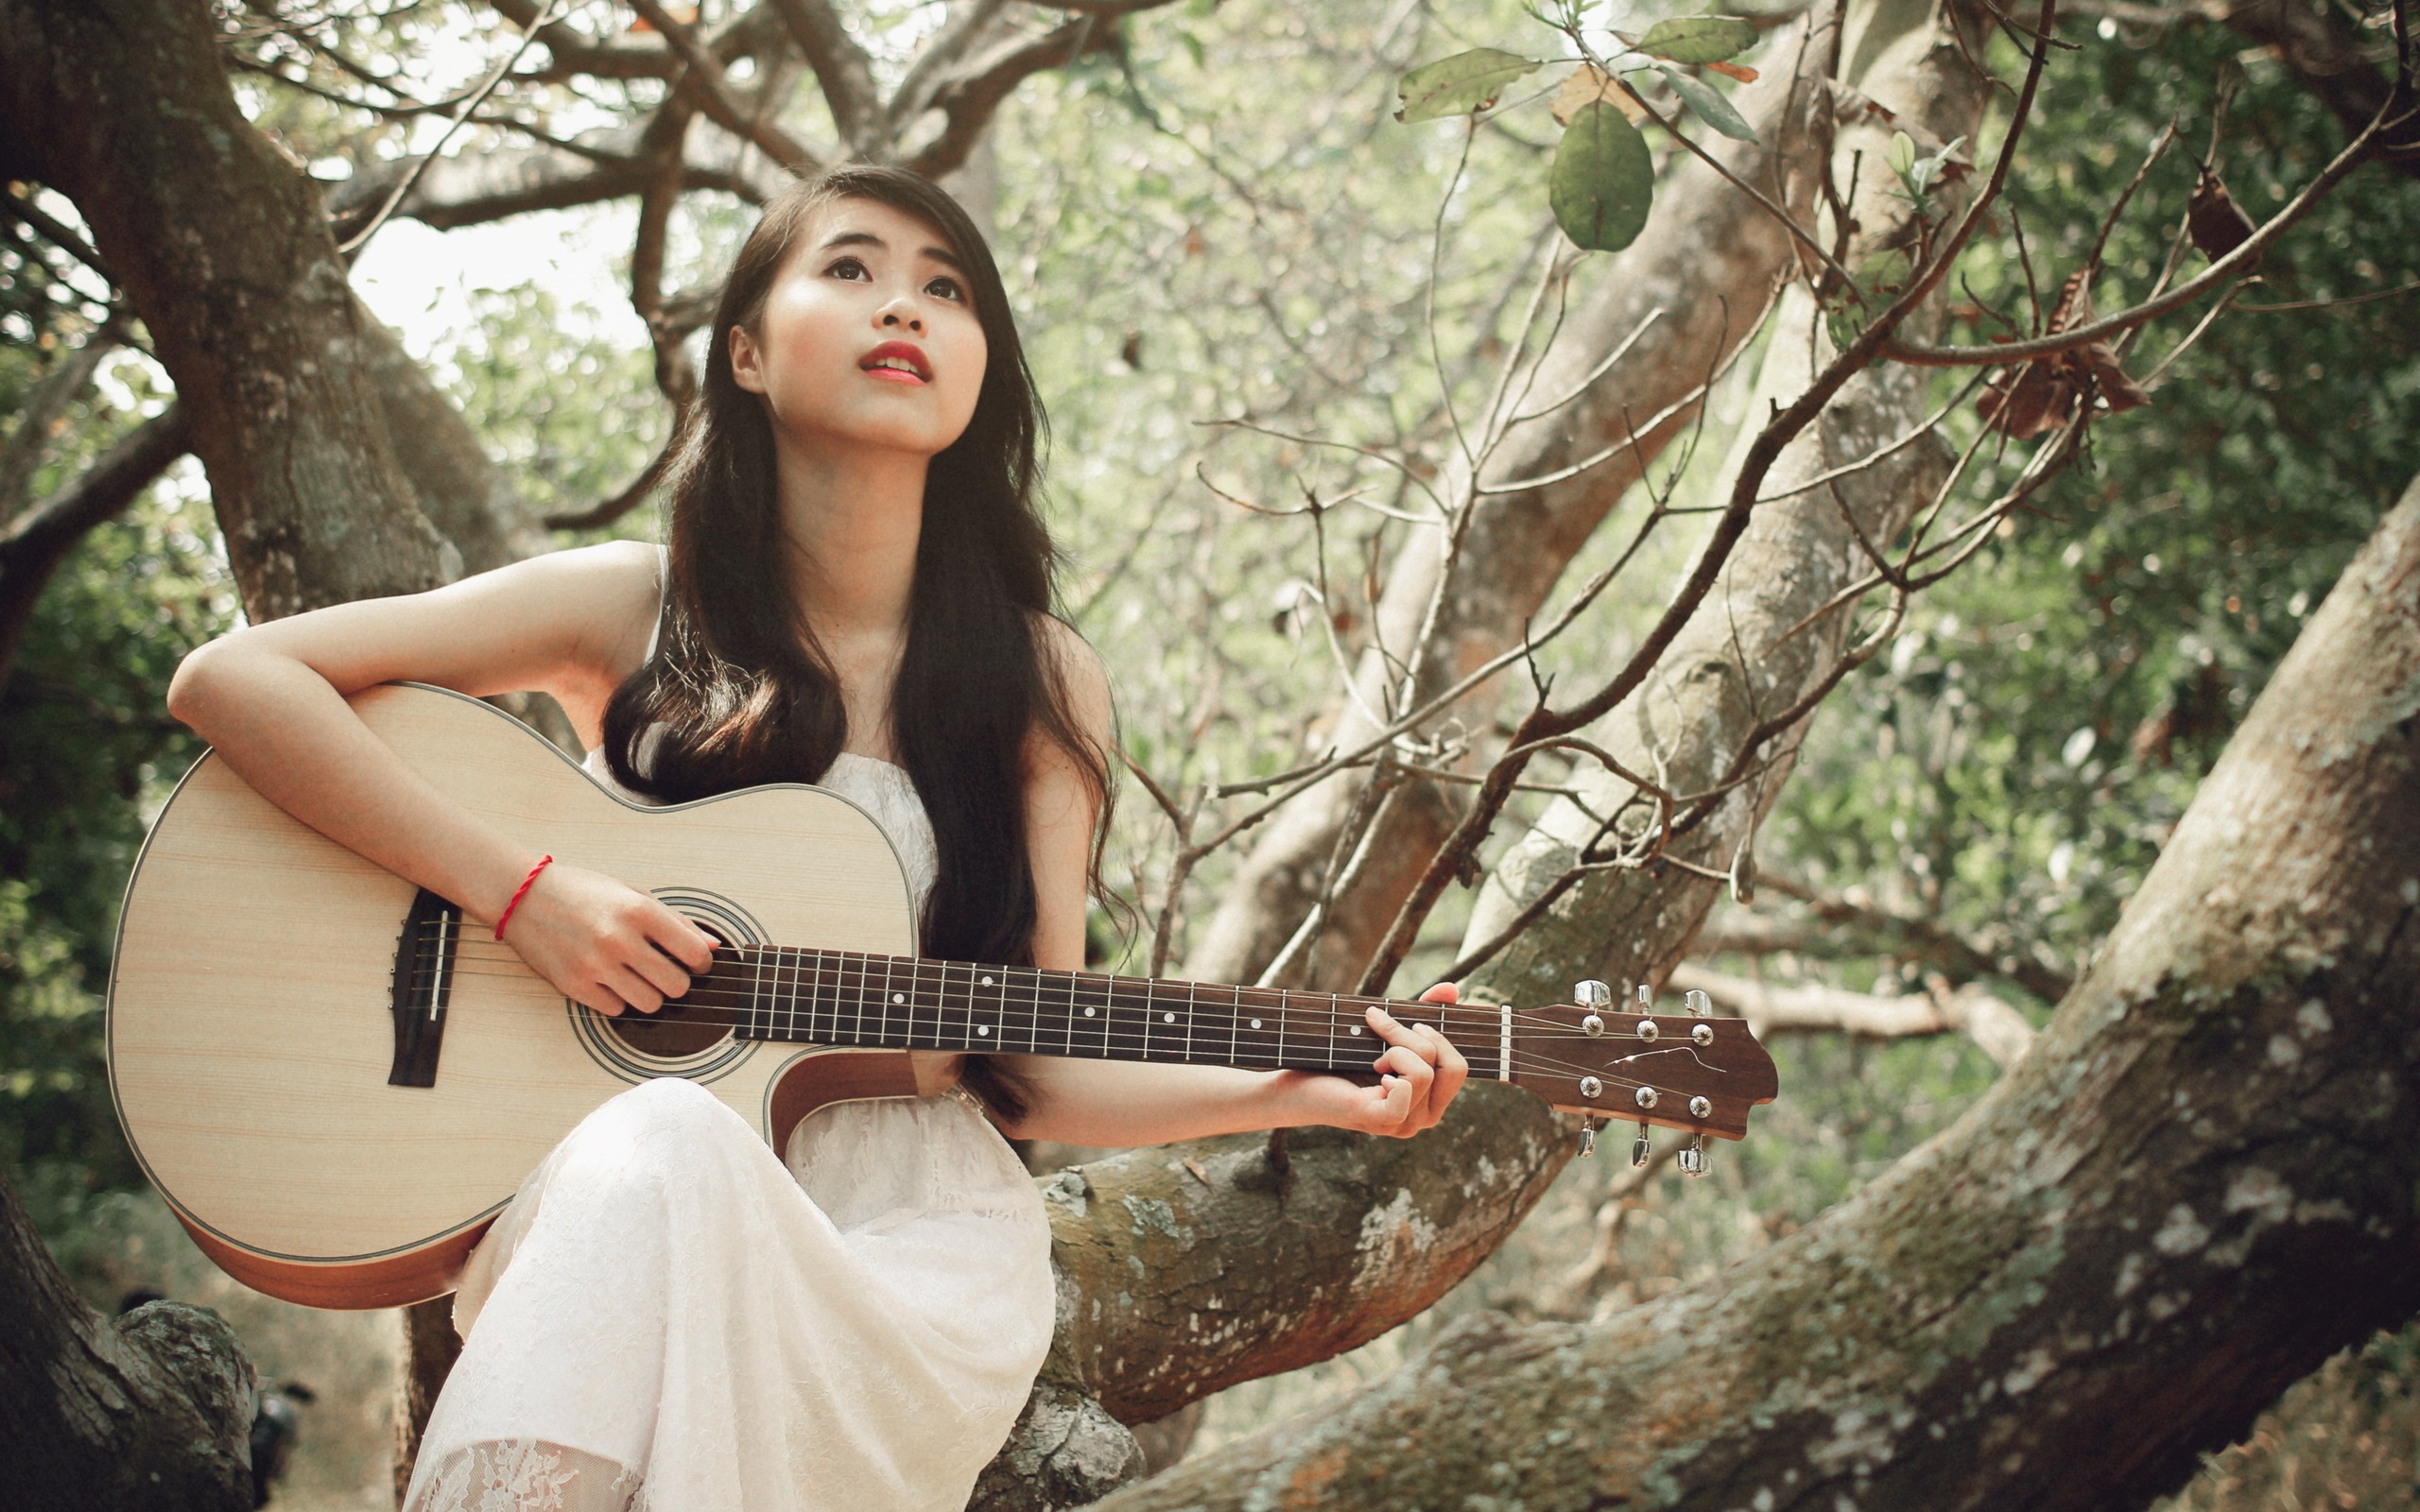 White-dress-girl-asian-guitar_2560x1600.jpg